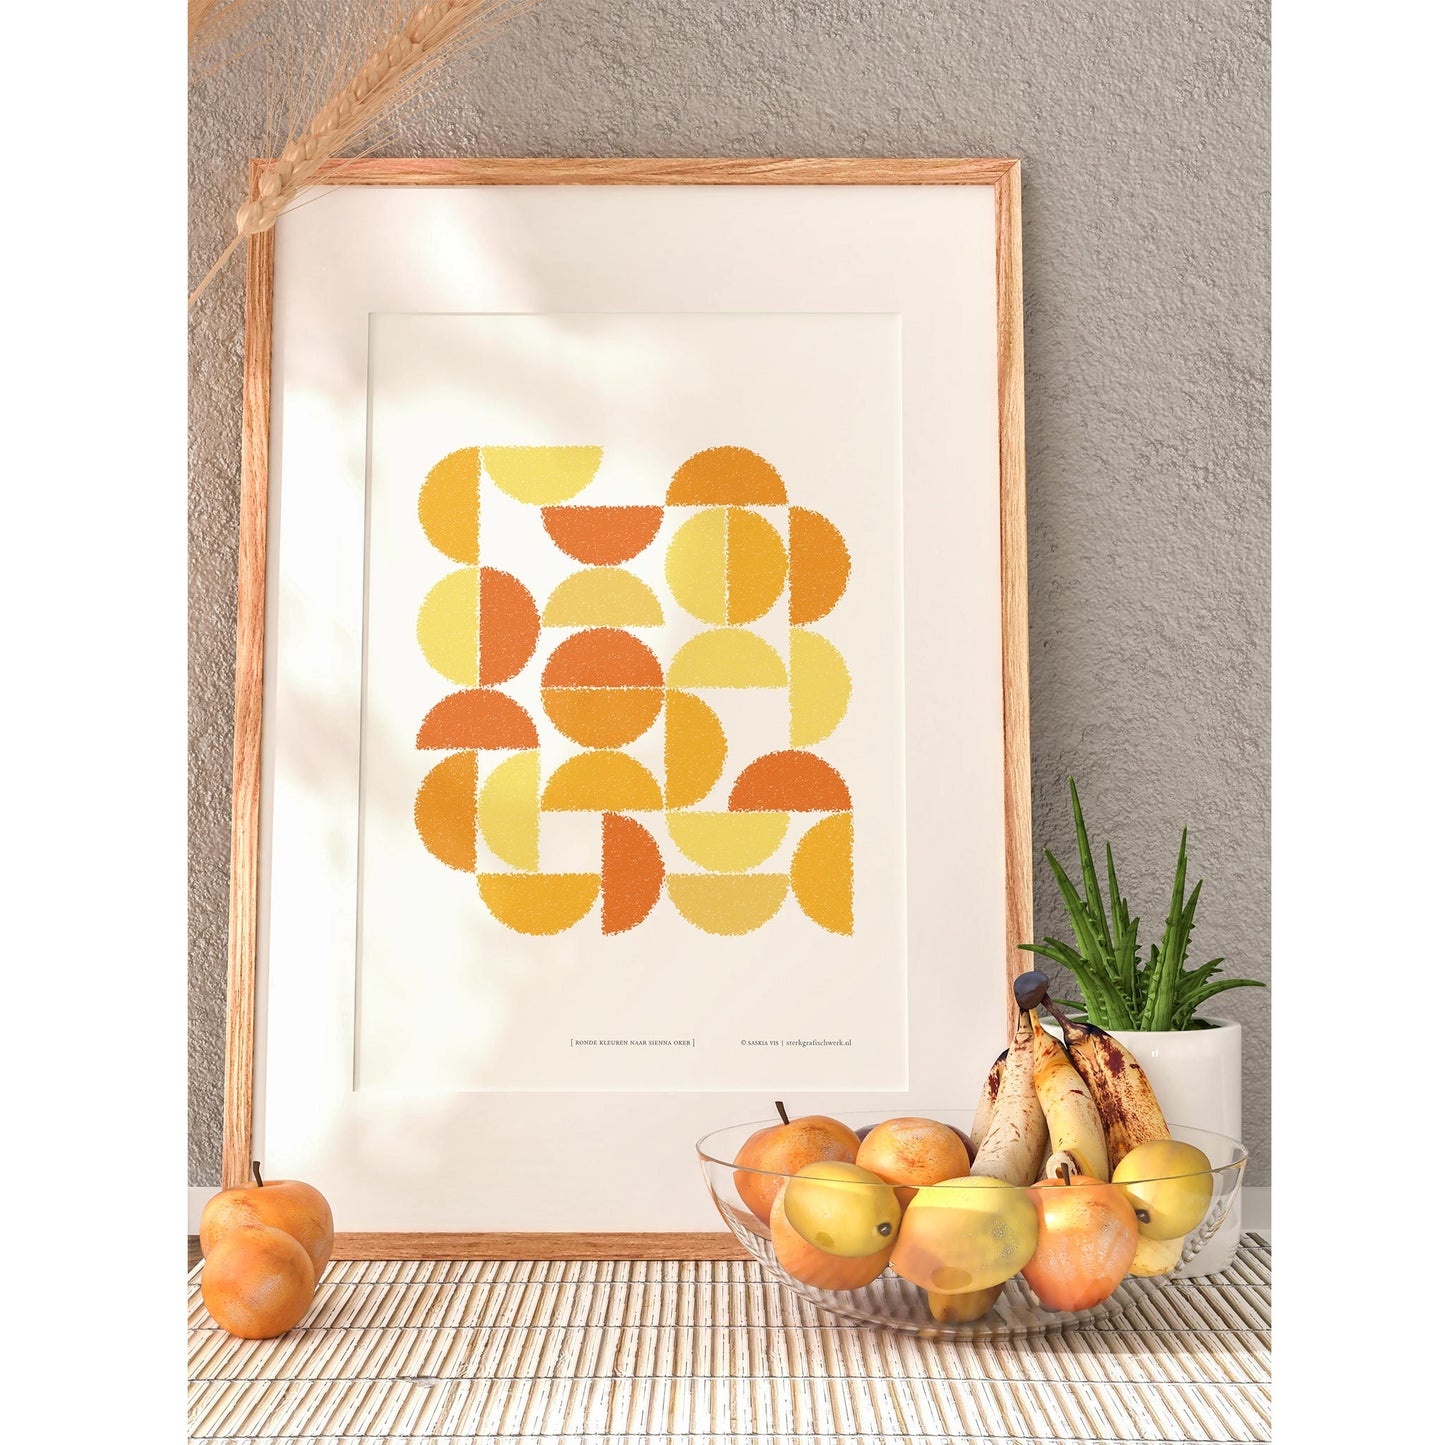 Productafbeelding, poster "ronde kleuren naar sienna oker", in een houten lijst met een schaal en wat fruit erbij, ter impressie